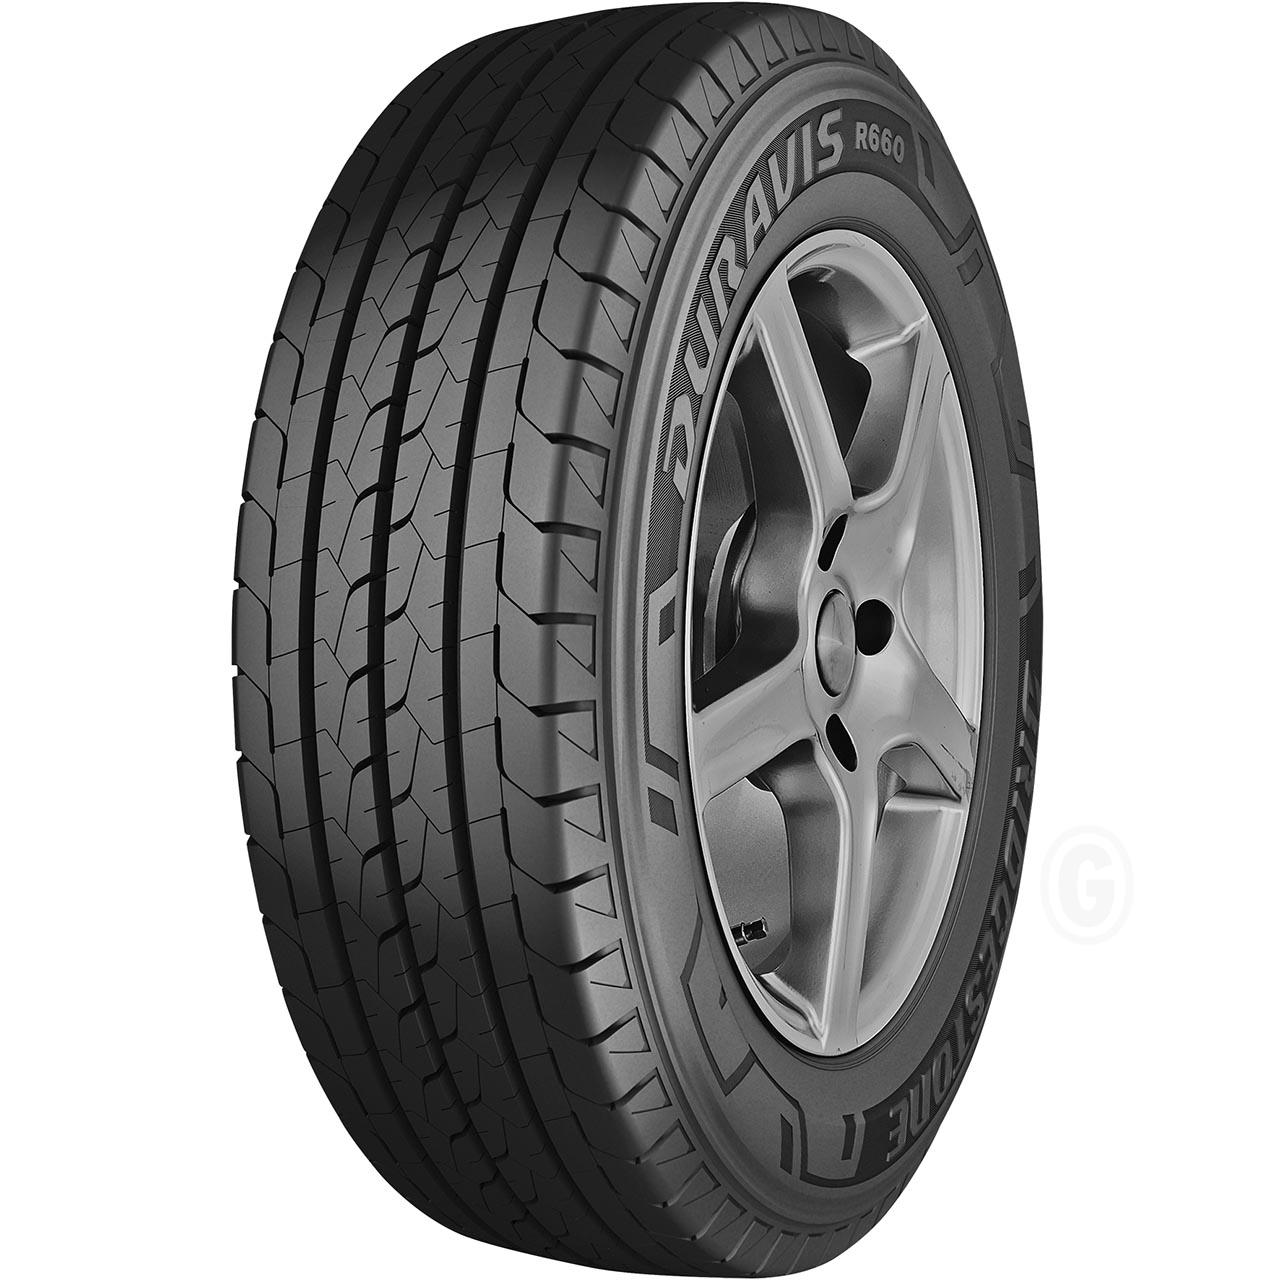 Bridgestone Duravis R660 235/65R16C 115/113R